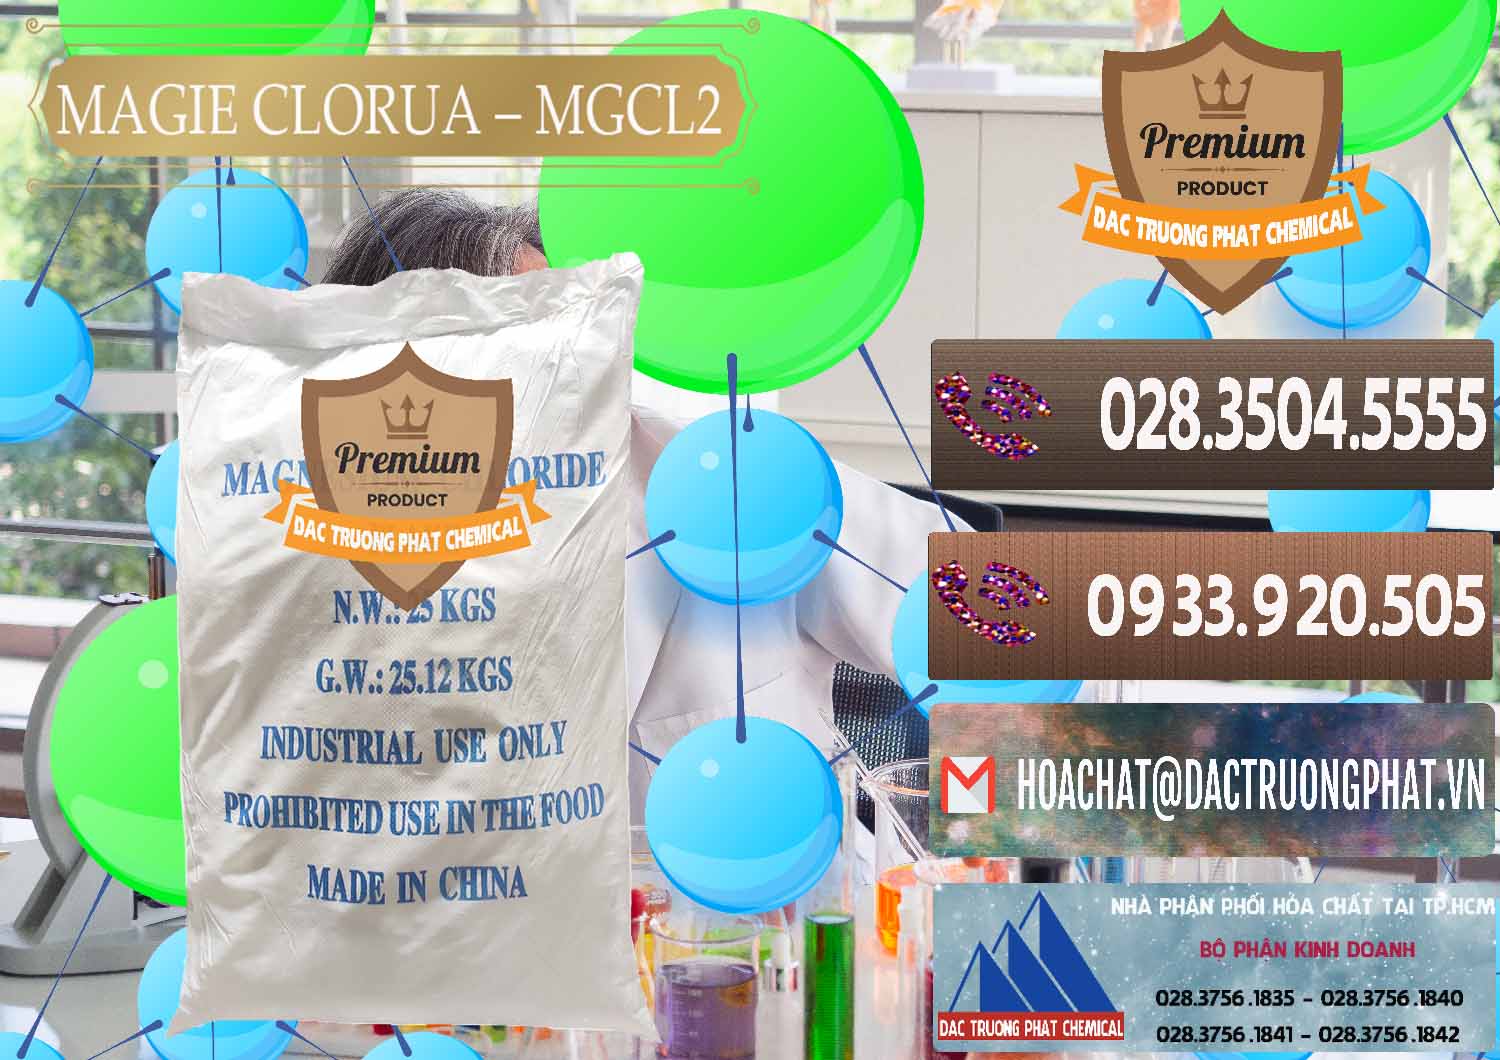 Nơi chuyên bán - phân phối Magie Clorua – MGCL2 96% Dạng Vảy Trung Quốc China - 0091 - Cty phân phối - nhập khẩu hóa chất tại TP.HCM - hoachatviet.net